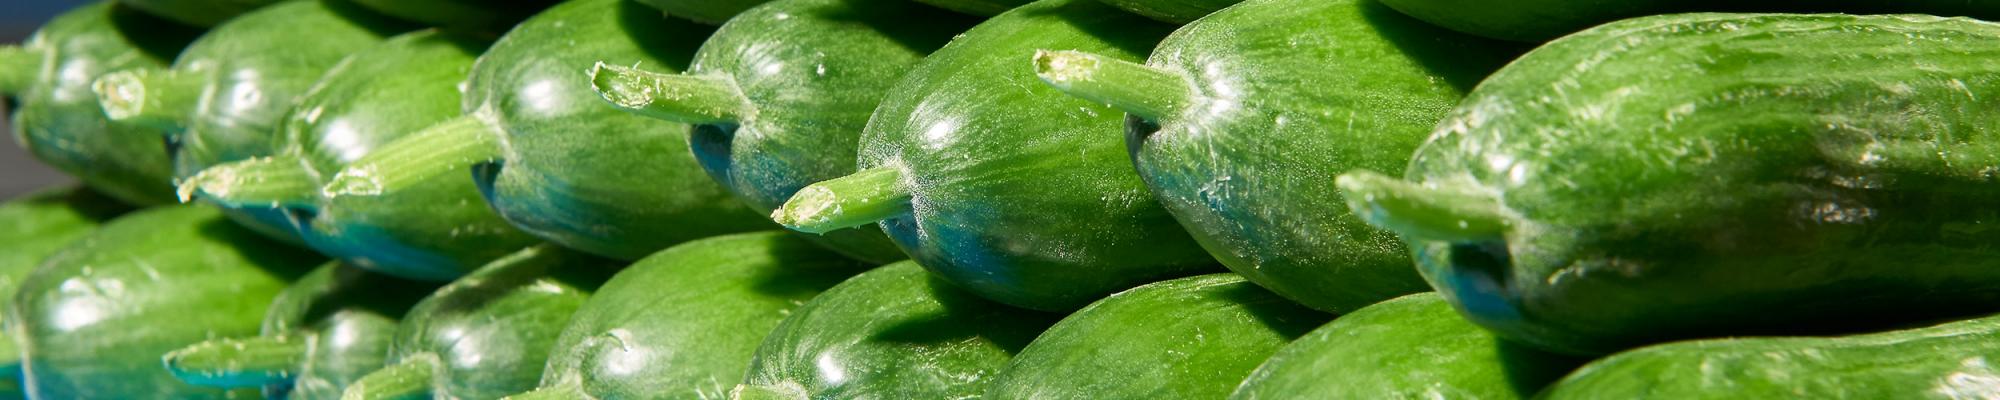 (Mini) Cucumbers